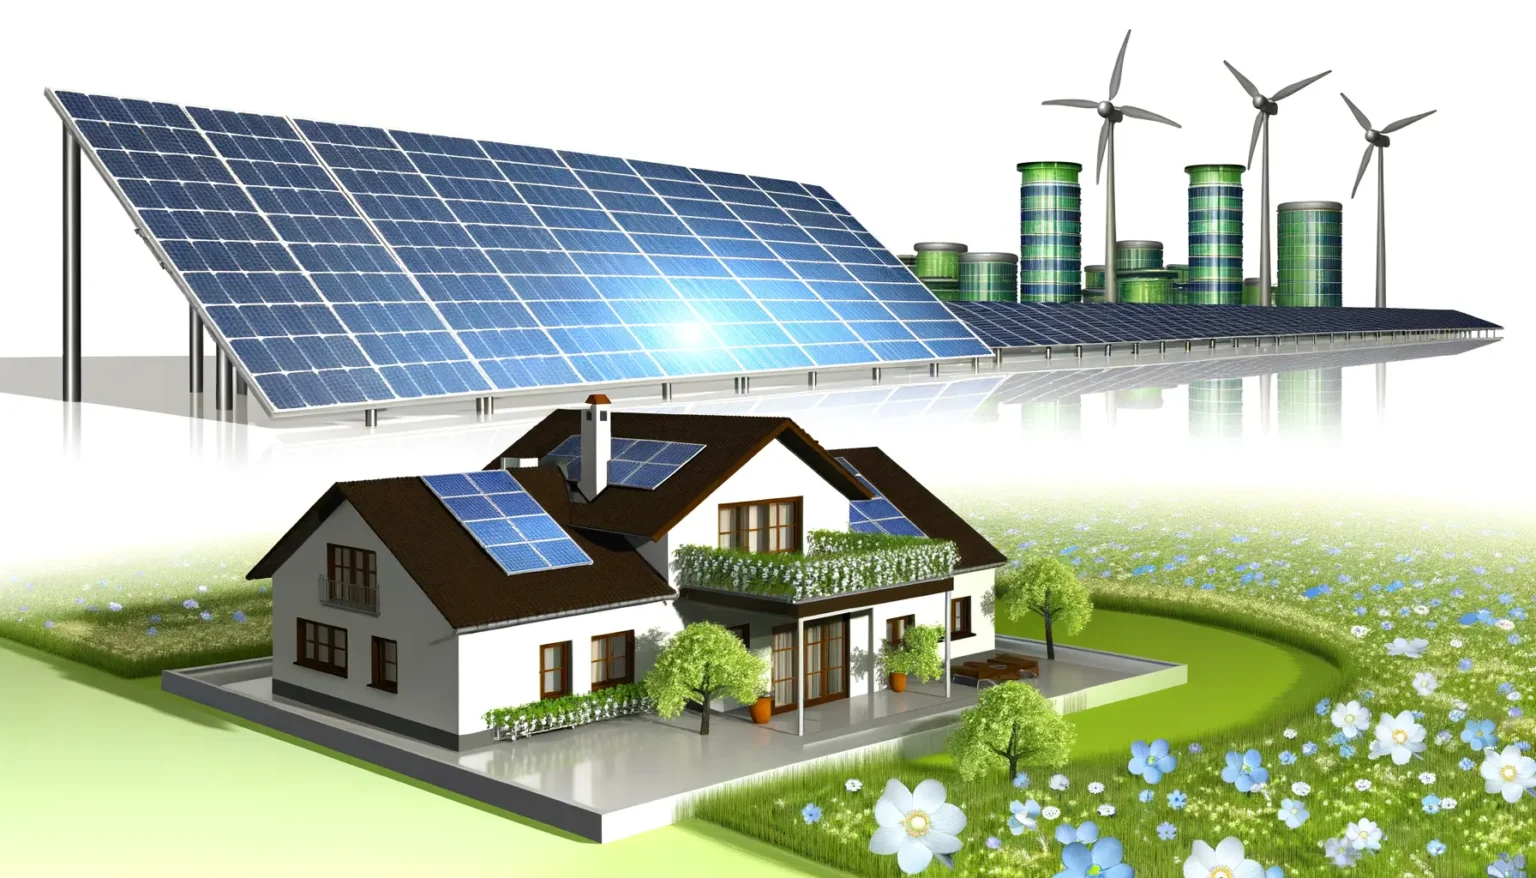 Illustration einer umweltfreundlichen, nachhaltigen Energieversorgung mit einem Haus, das mit Solarmodulen ausgestattet ist, großen Solarpanels im Hintergrund, Windkraftanlagen und grünen Energielagerzylindern auf einer blumenreichen Wiese unter einem klaren Himmel.